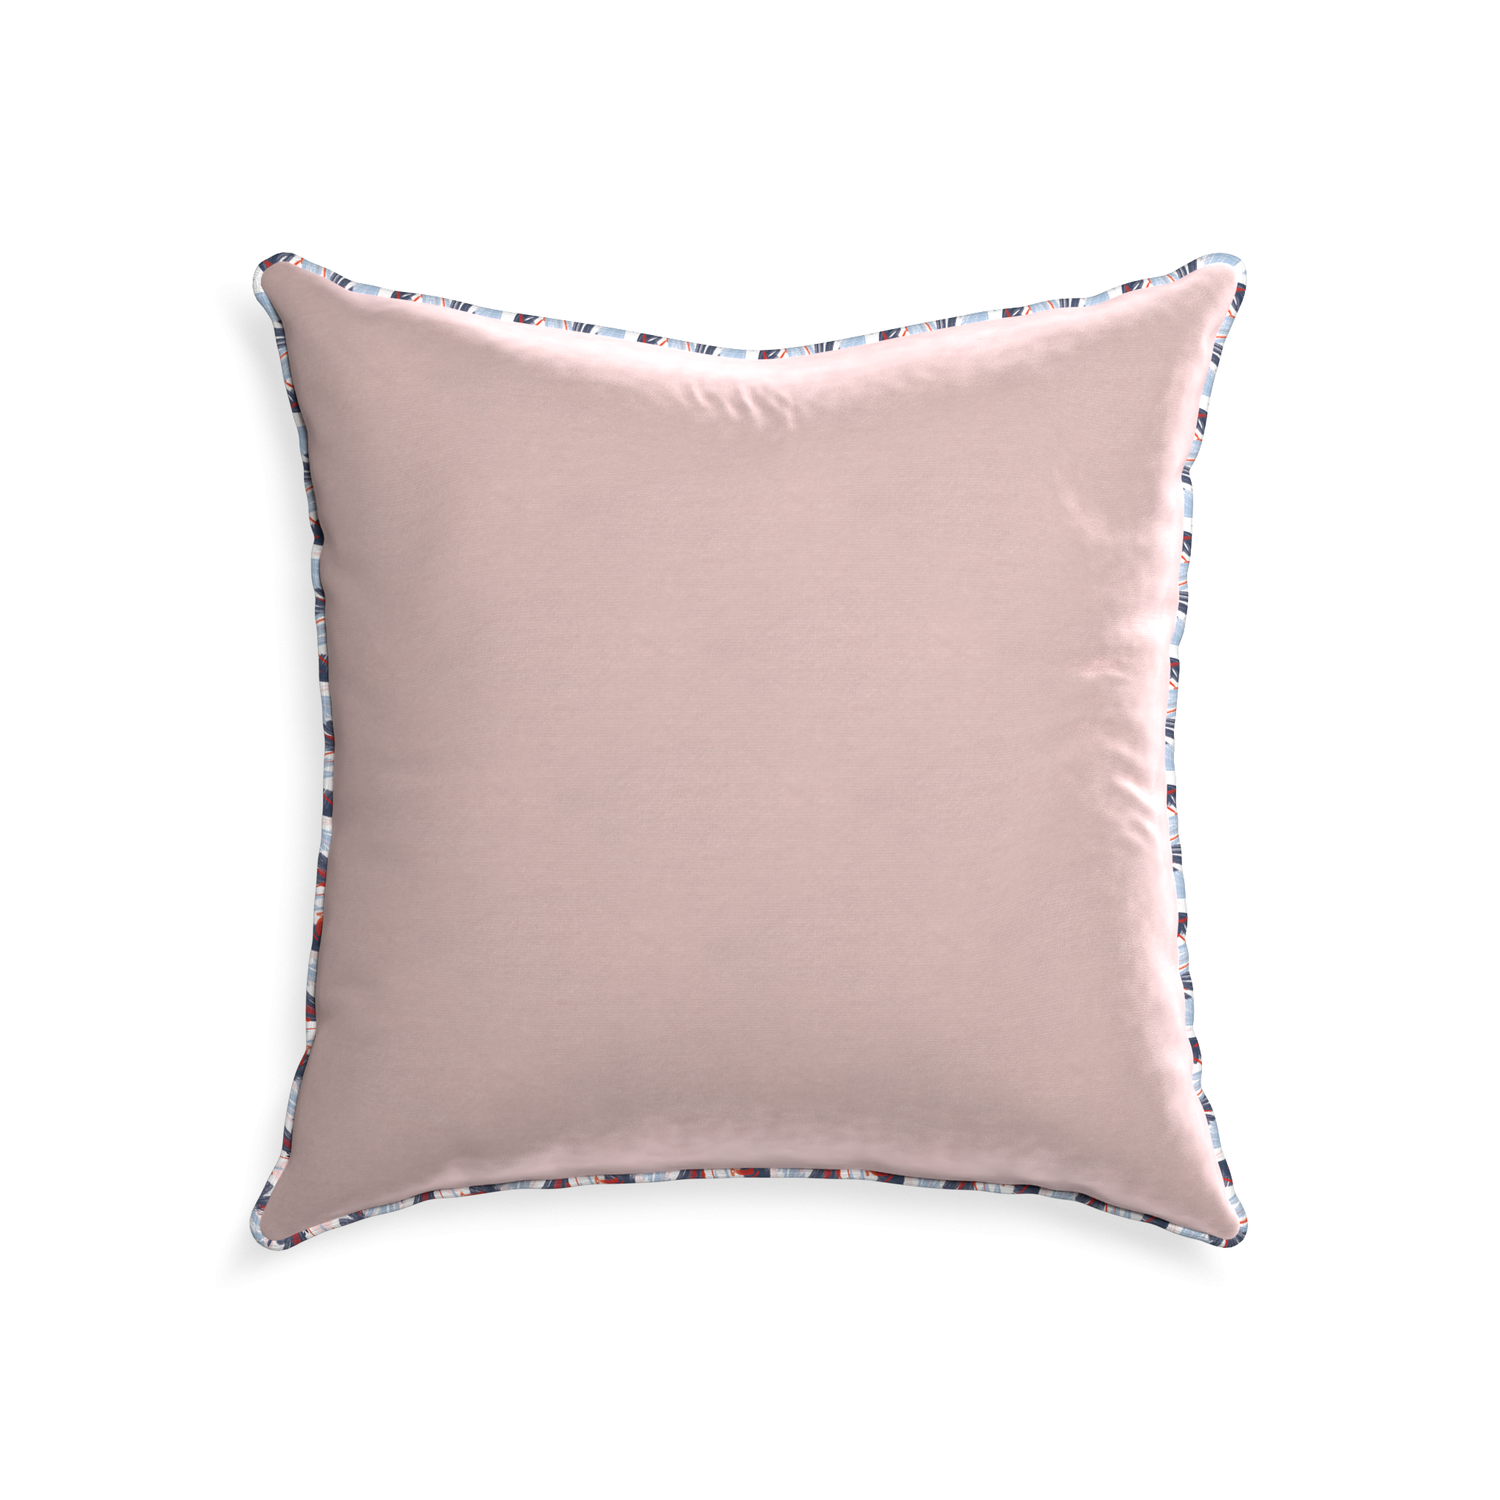 22-square rose velvet custom pillow with e piping on white background